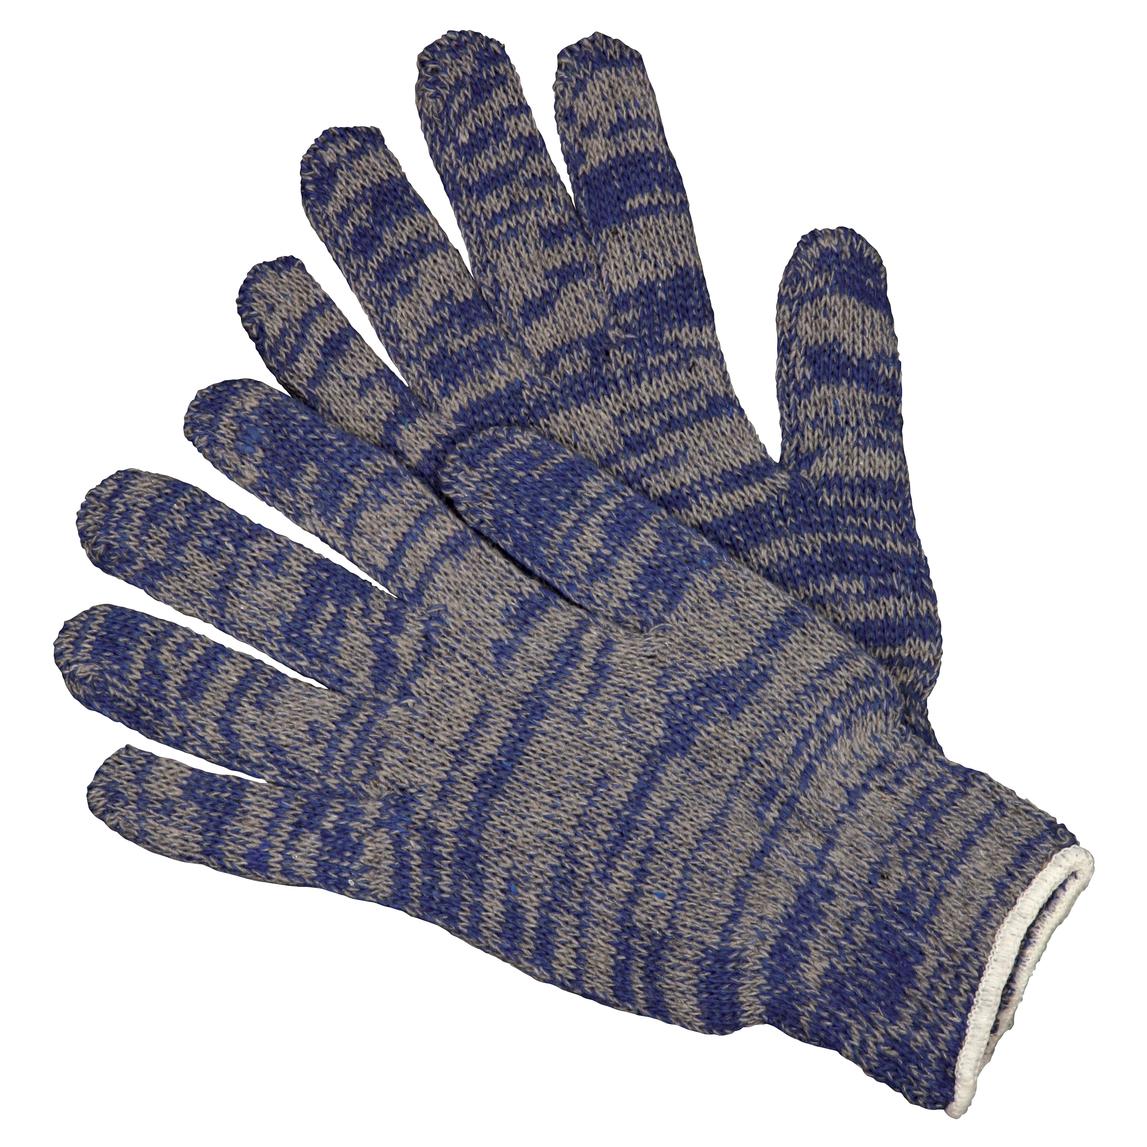 MCR Safety 9642 String Knit Gloves - 7 Gauge Economy Weight Cotton ...